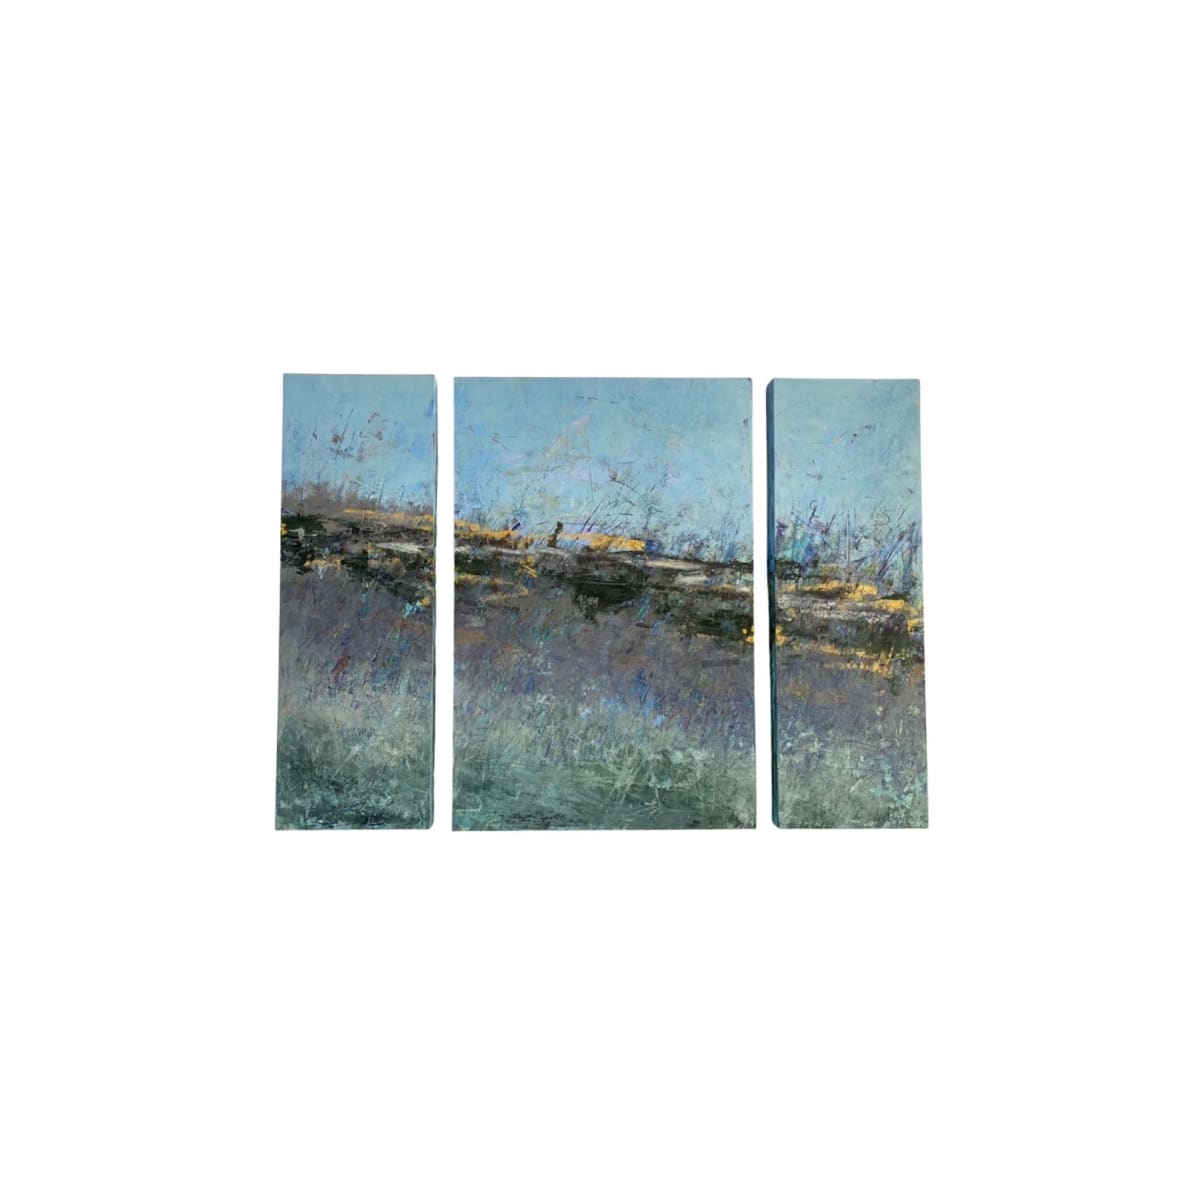 Shoreline, Triptych 36x48" by Ginnie Cappaert 